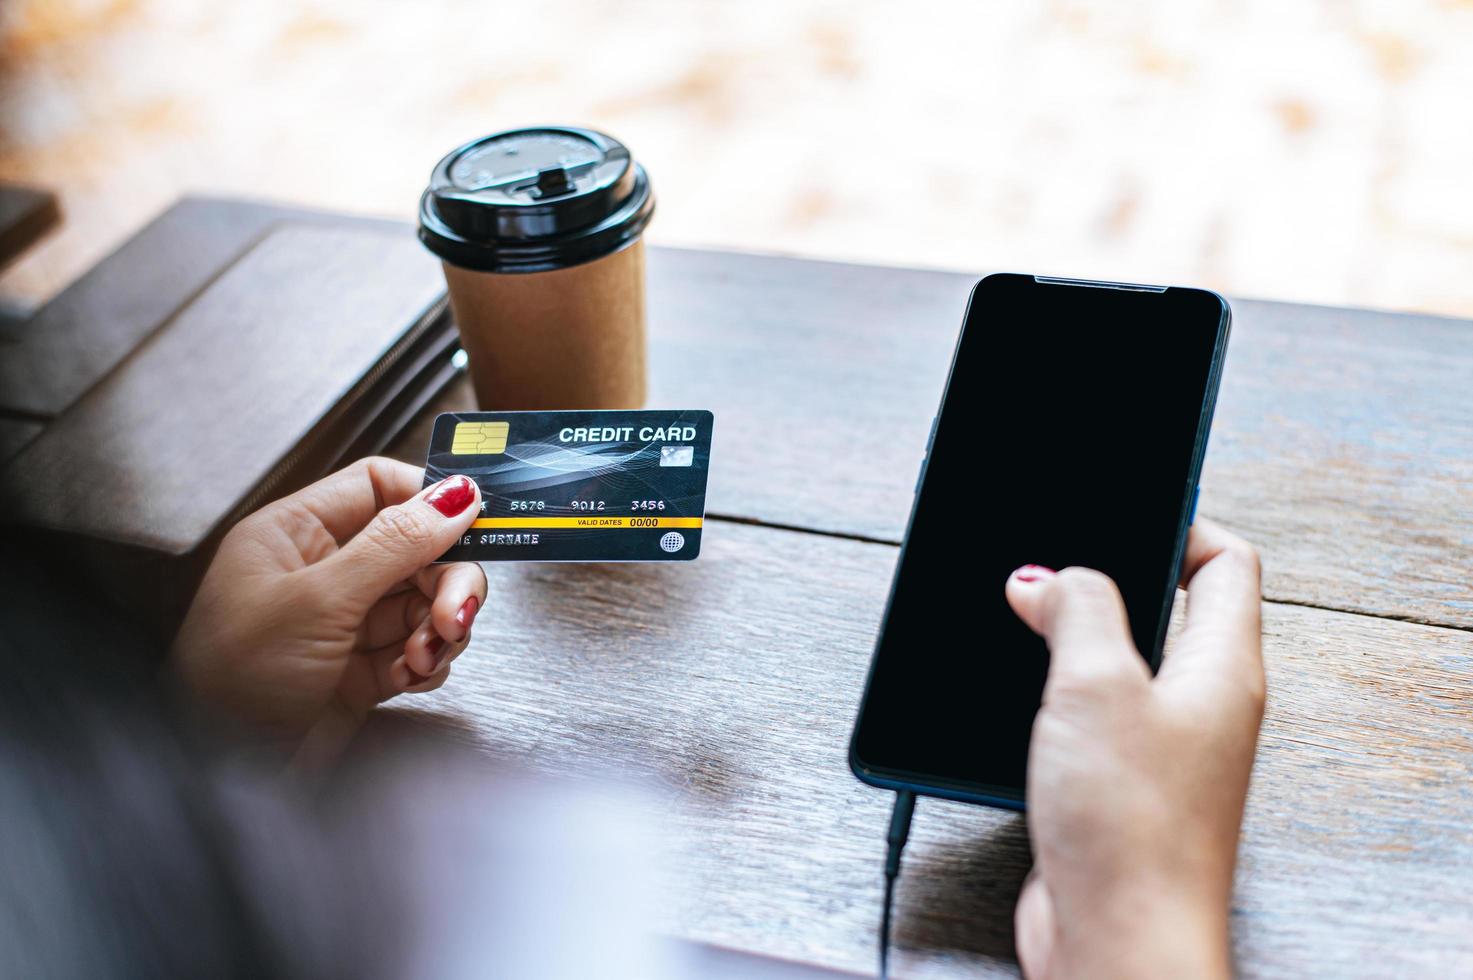 paiement des marchandises par carte de crédit via smartphone photo